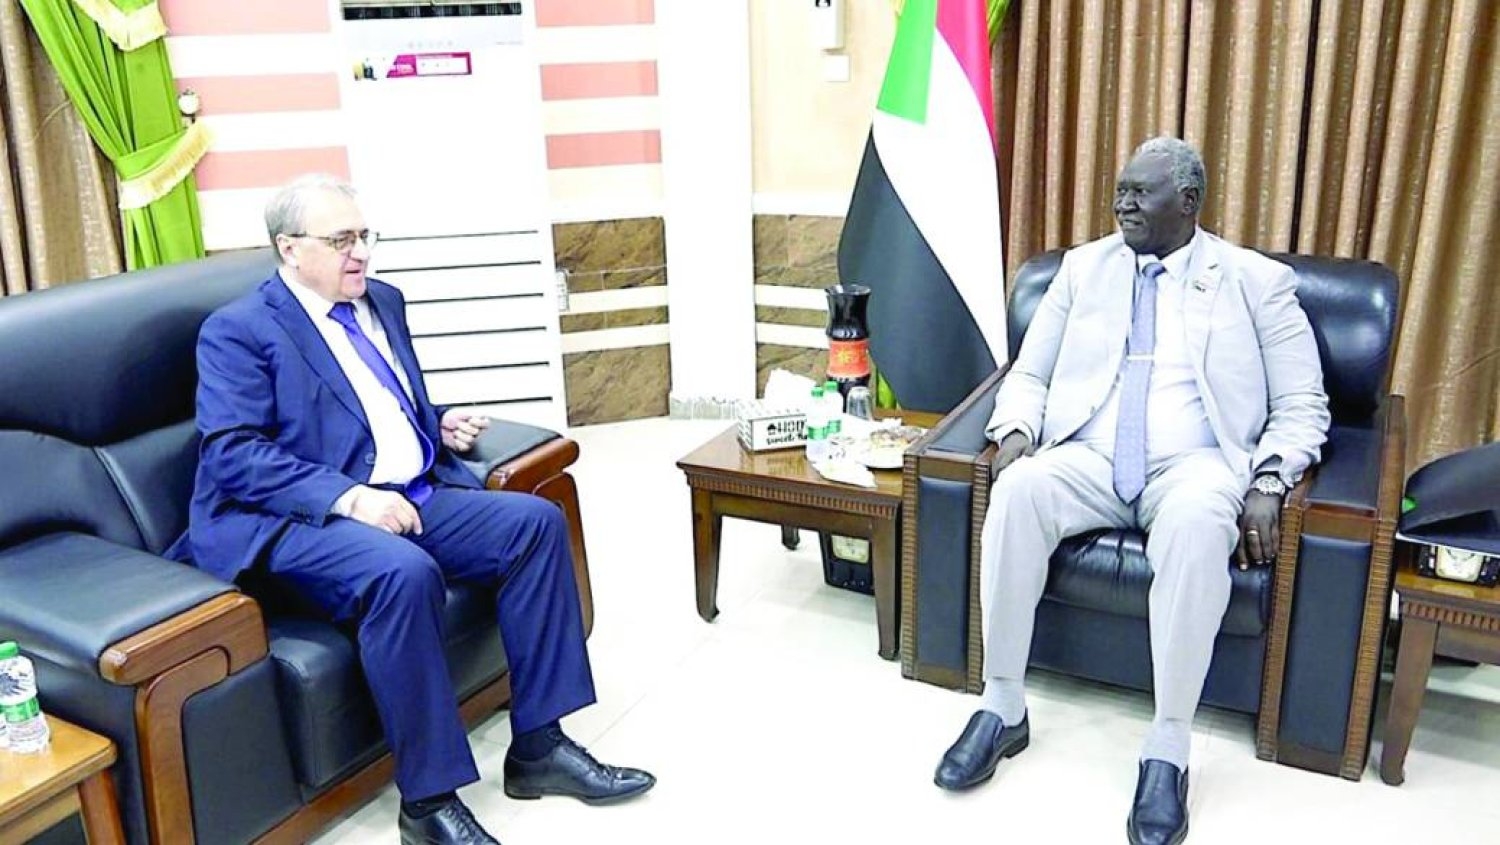 ماذا وراء زيارات متزامنة لمسؤولين سودانيين إلى روسيا ودول أفريقية؟